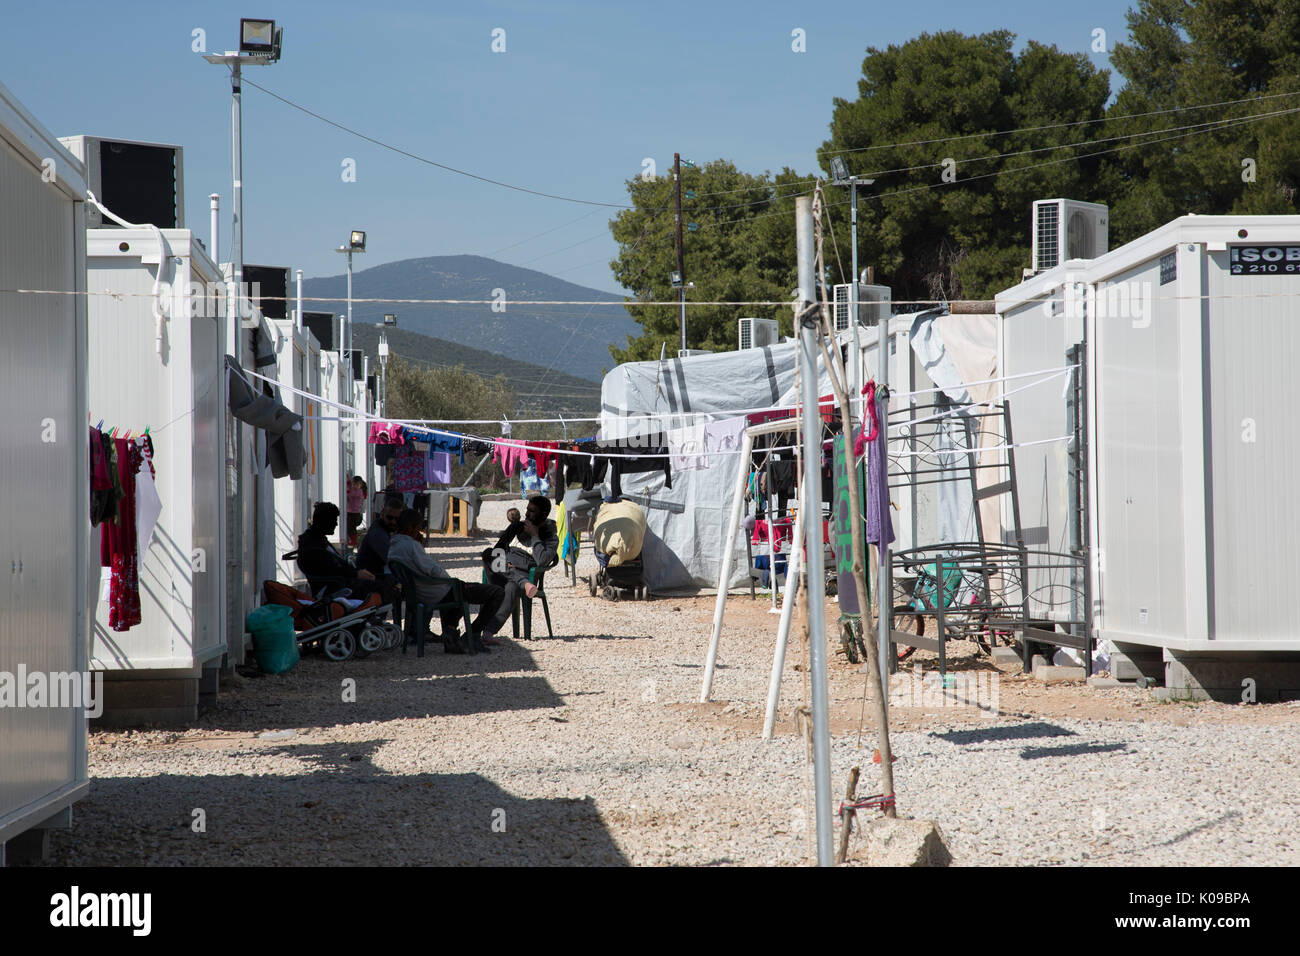 Los hombres sentados a la sombra entre las filas de las unidades prefabricadas de alojamiento en campamento de refugiados Ritsona, Grecia. Foto de stock